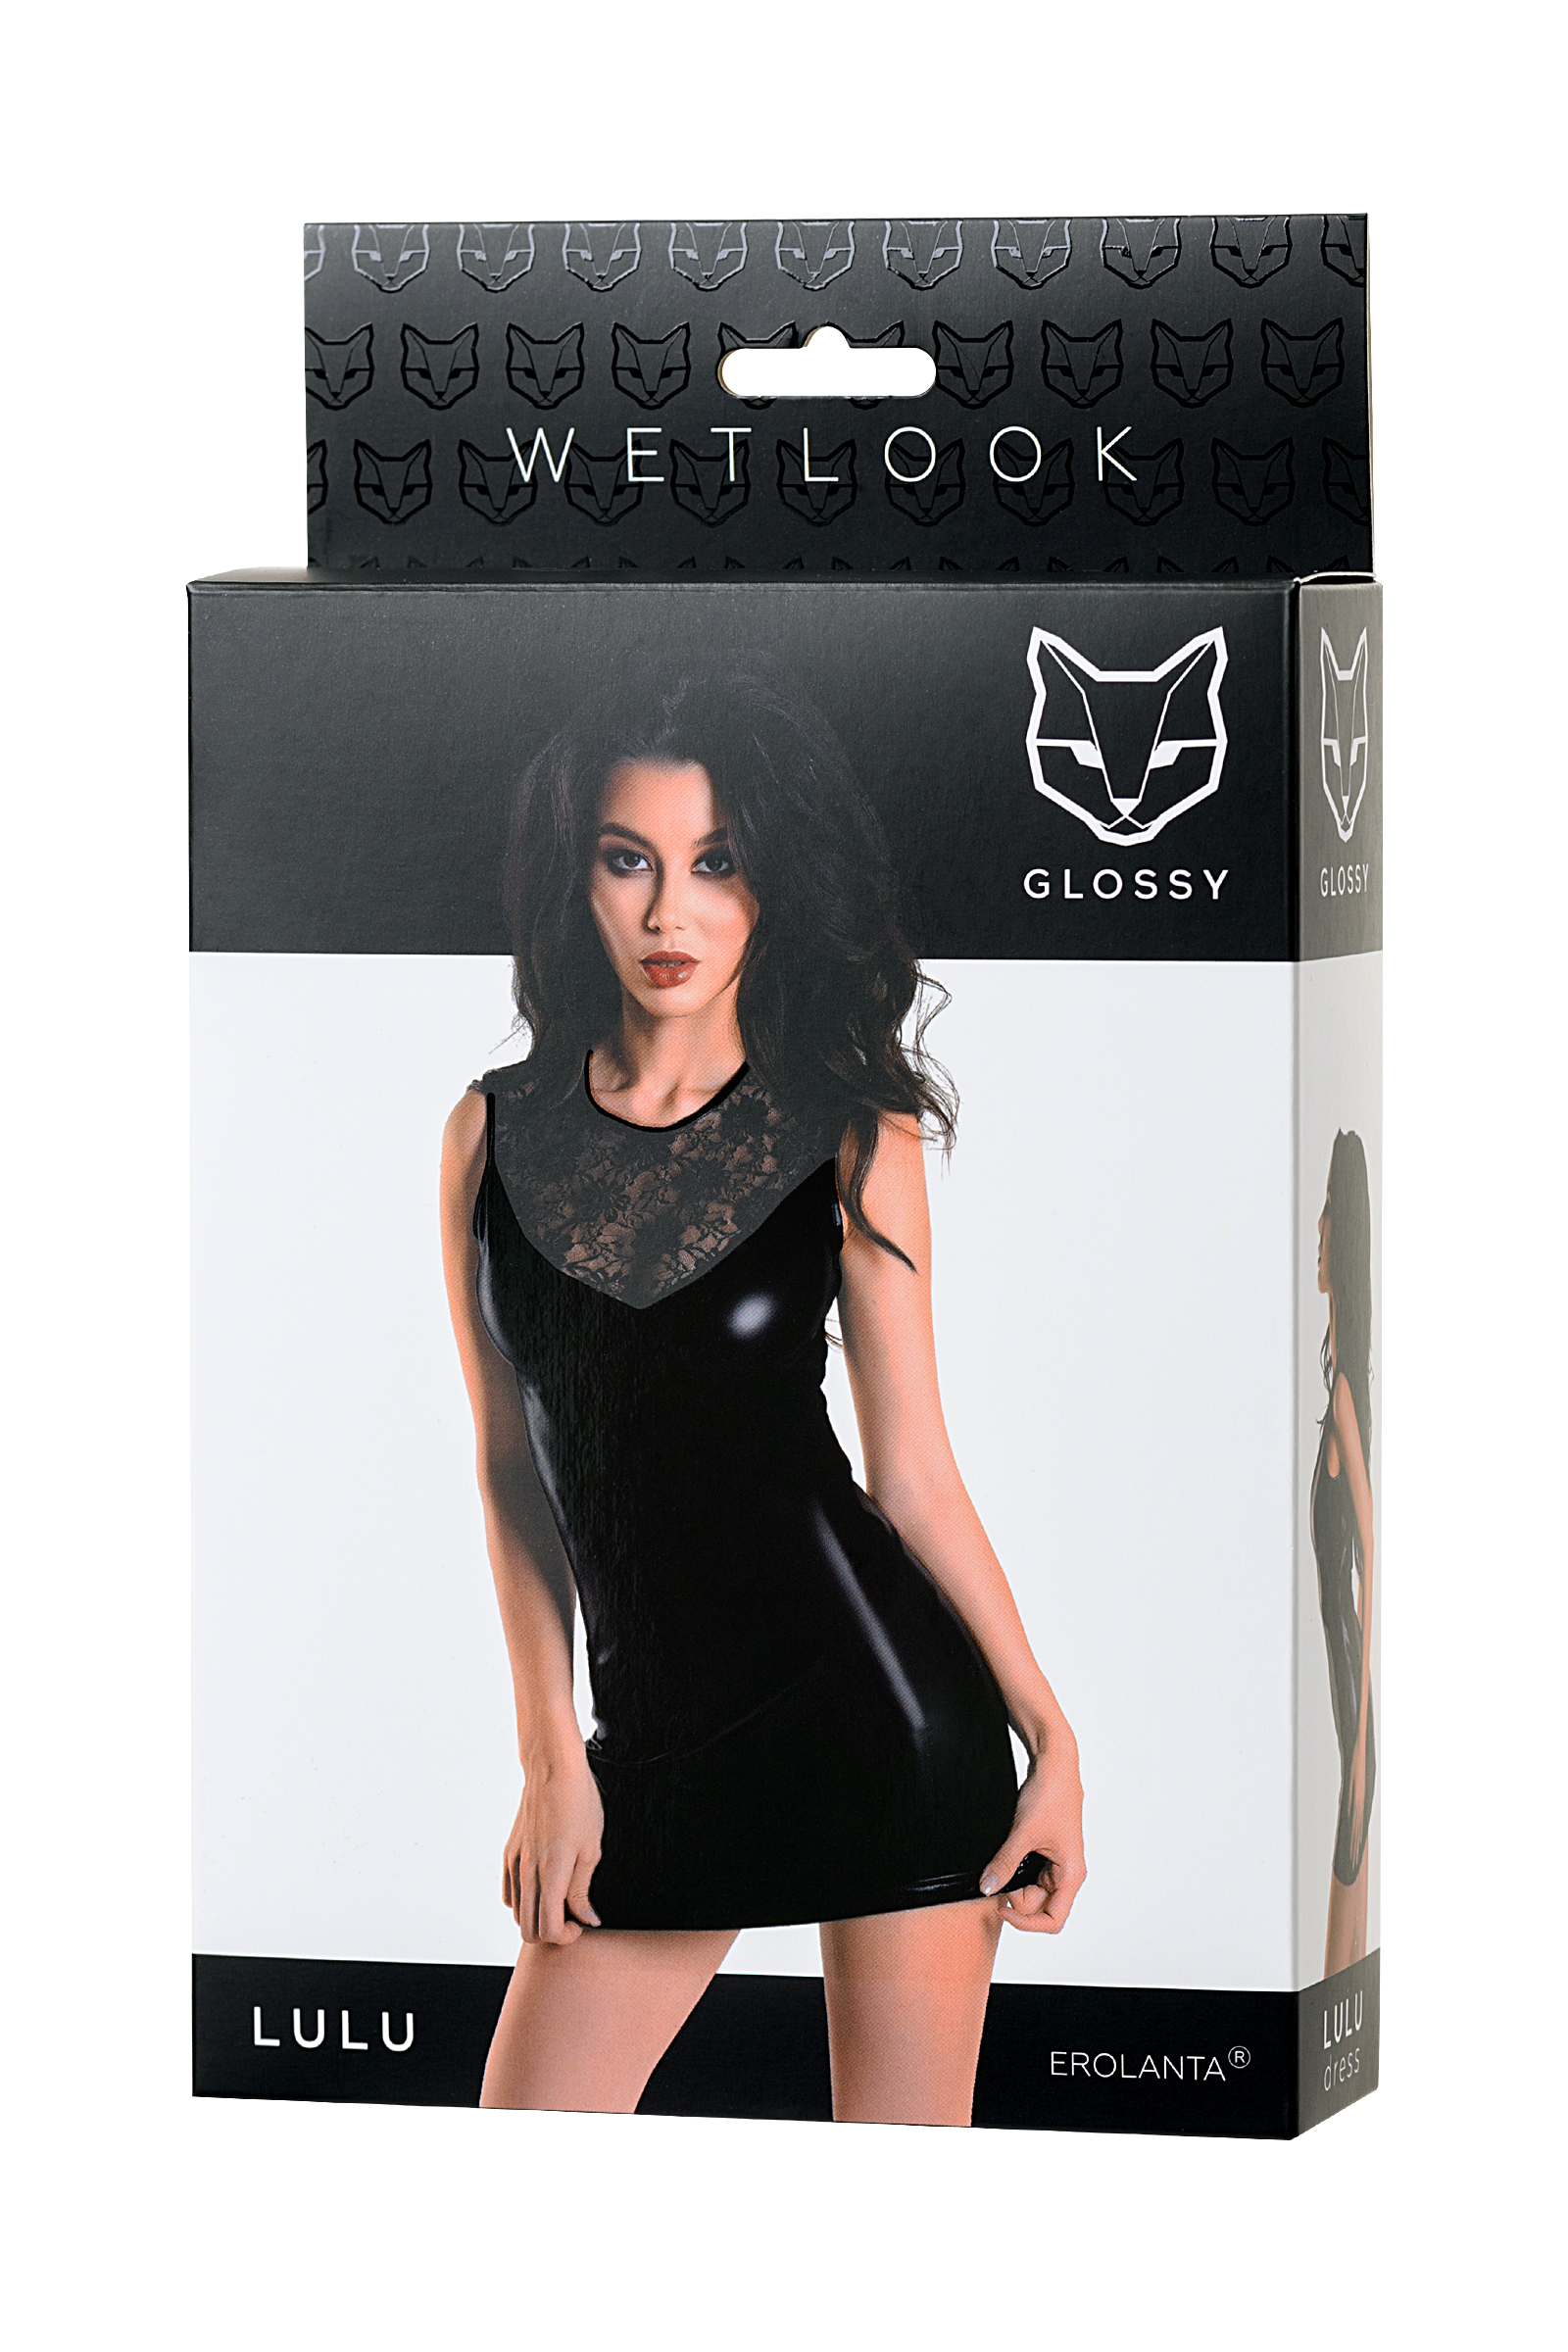 Платье Erolanta Glossy Lulu из материала Wetlook, черное, XL